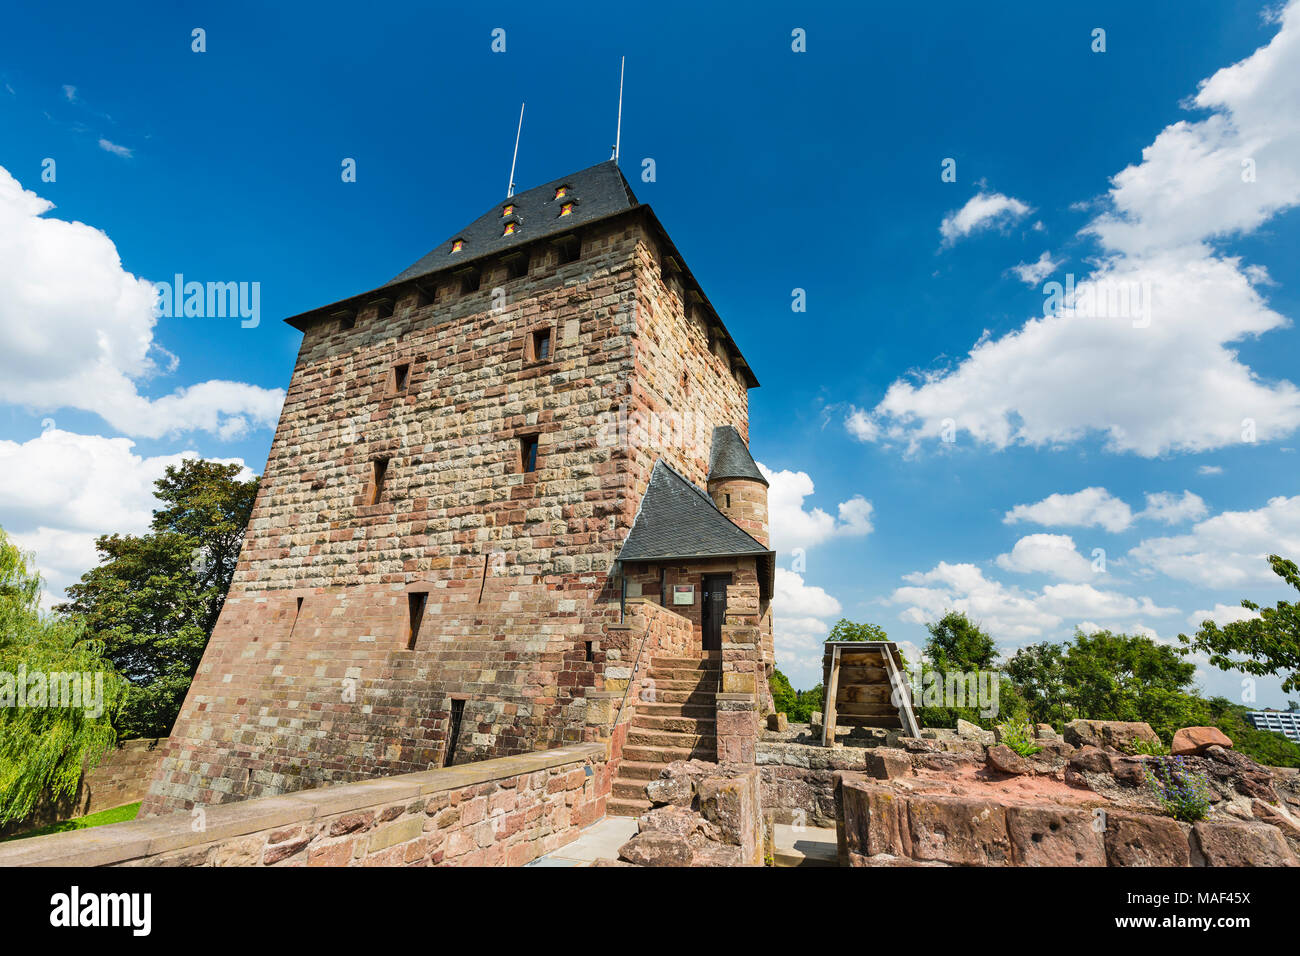 NIDEGGEN - 14 AUGUST: Der Wohnturm der Burg Burg Nideggen in der Eifel, Deutschland am 14. August 2016. Stockfoto